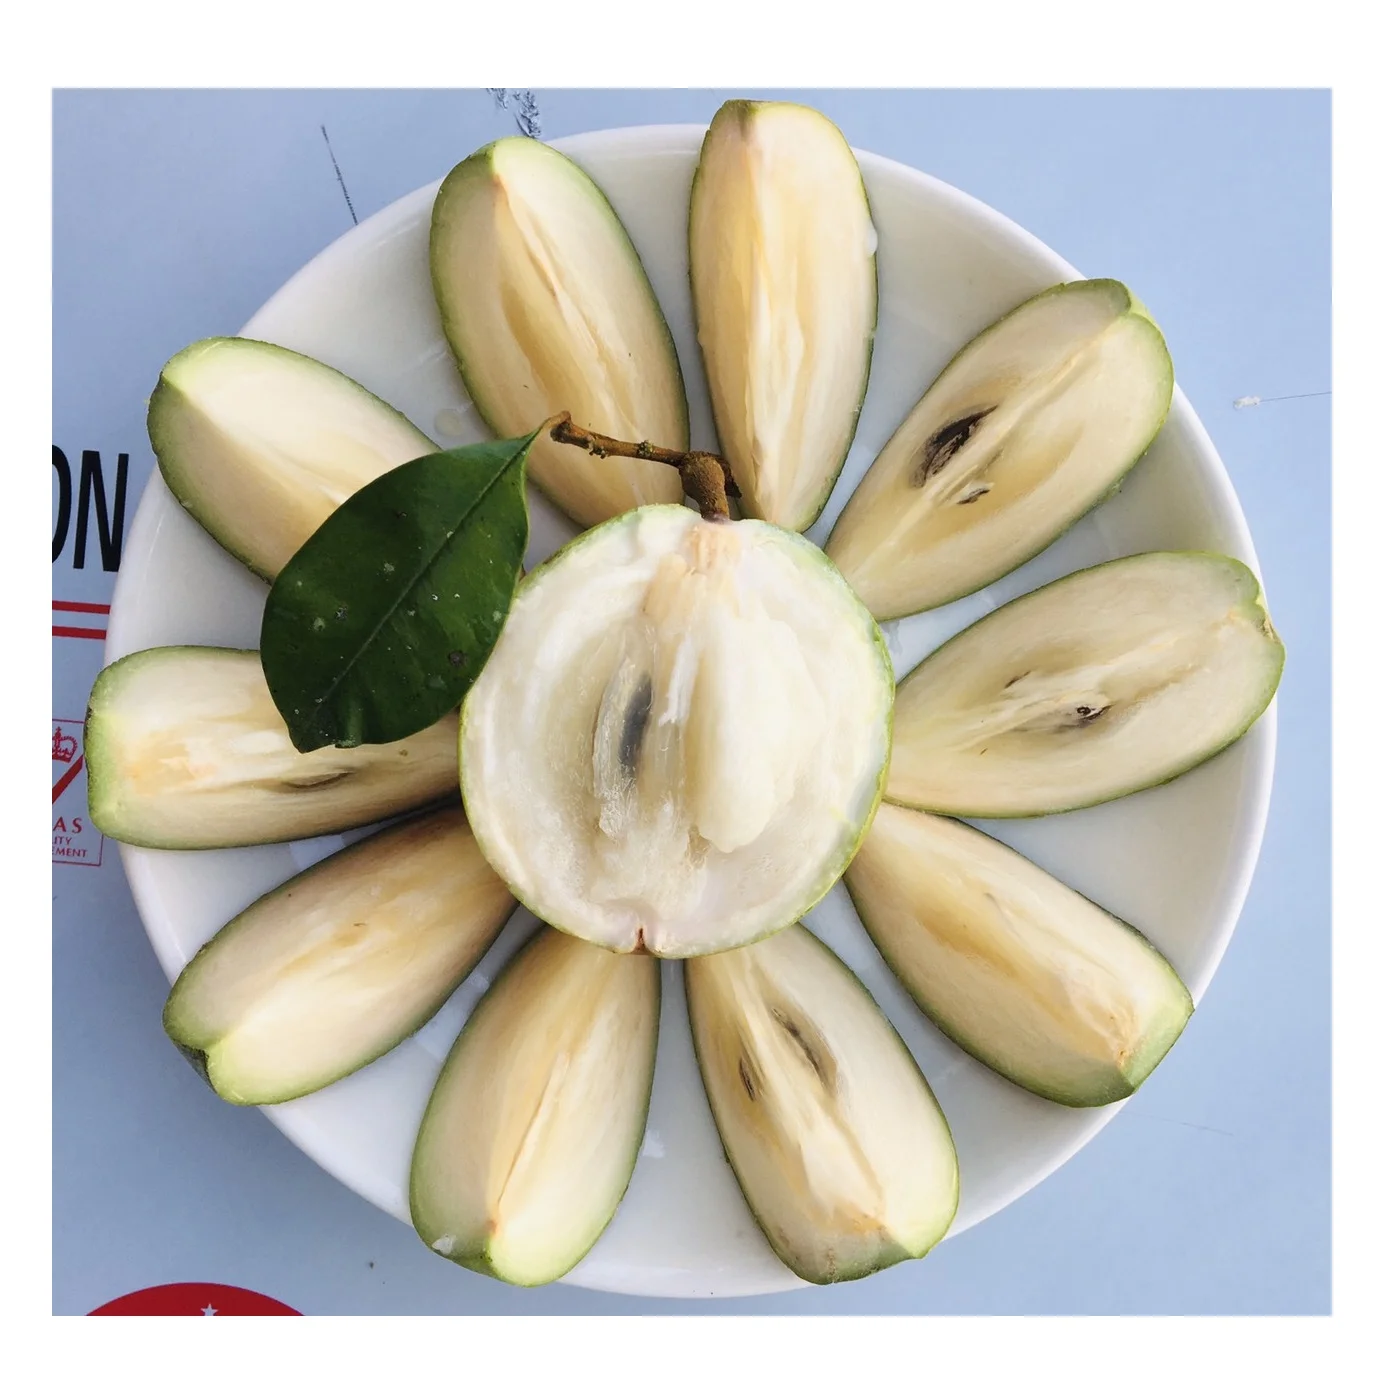 ベトナム西部からの自然な香りと穏やかな甘い味の卸売新鮮で健康的な特別な熟した成熟したホワイトスターアップル Buy 卸売新鮮な健康的な特別な熟した新鮮な果物の包装 成熟白スターアップル天然香りとマイルドな甘新鮮な果物の包装 ベトナム有機バルクカートン